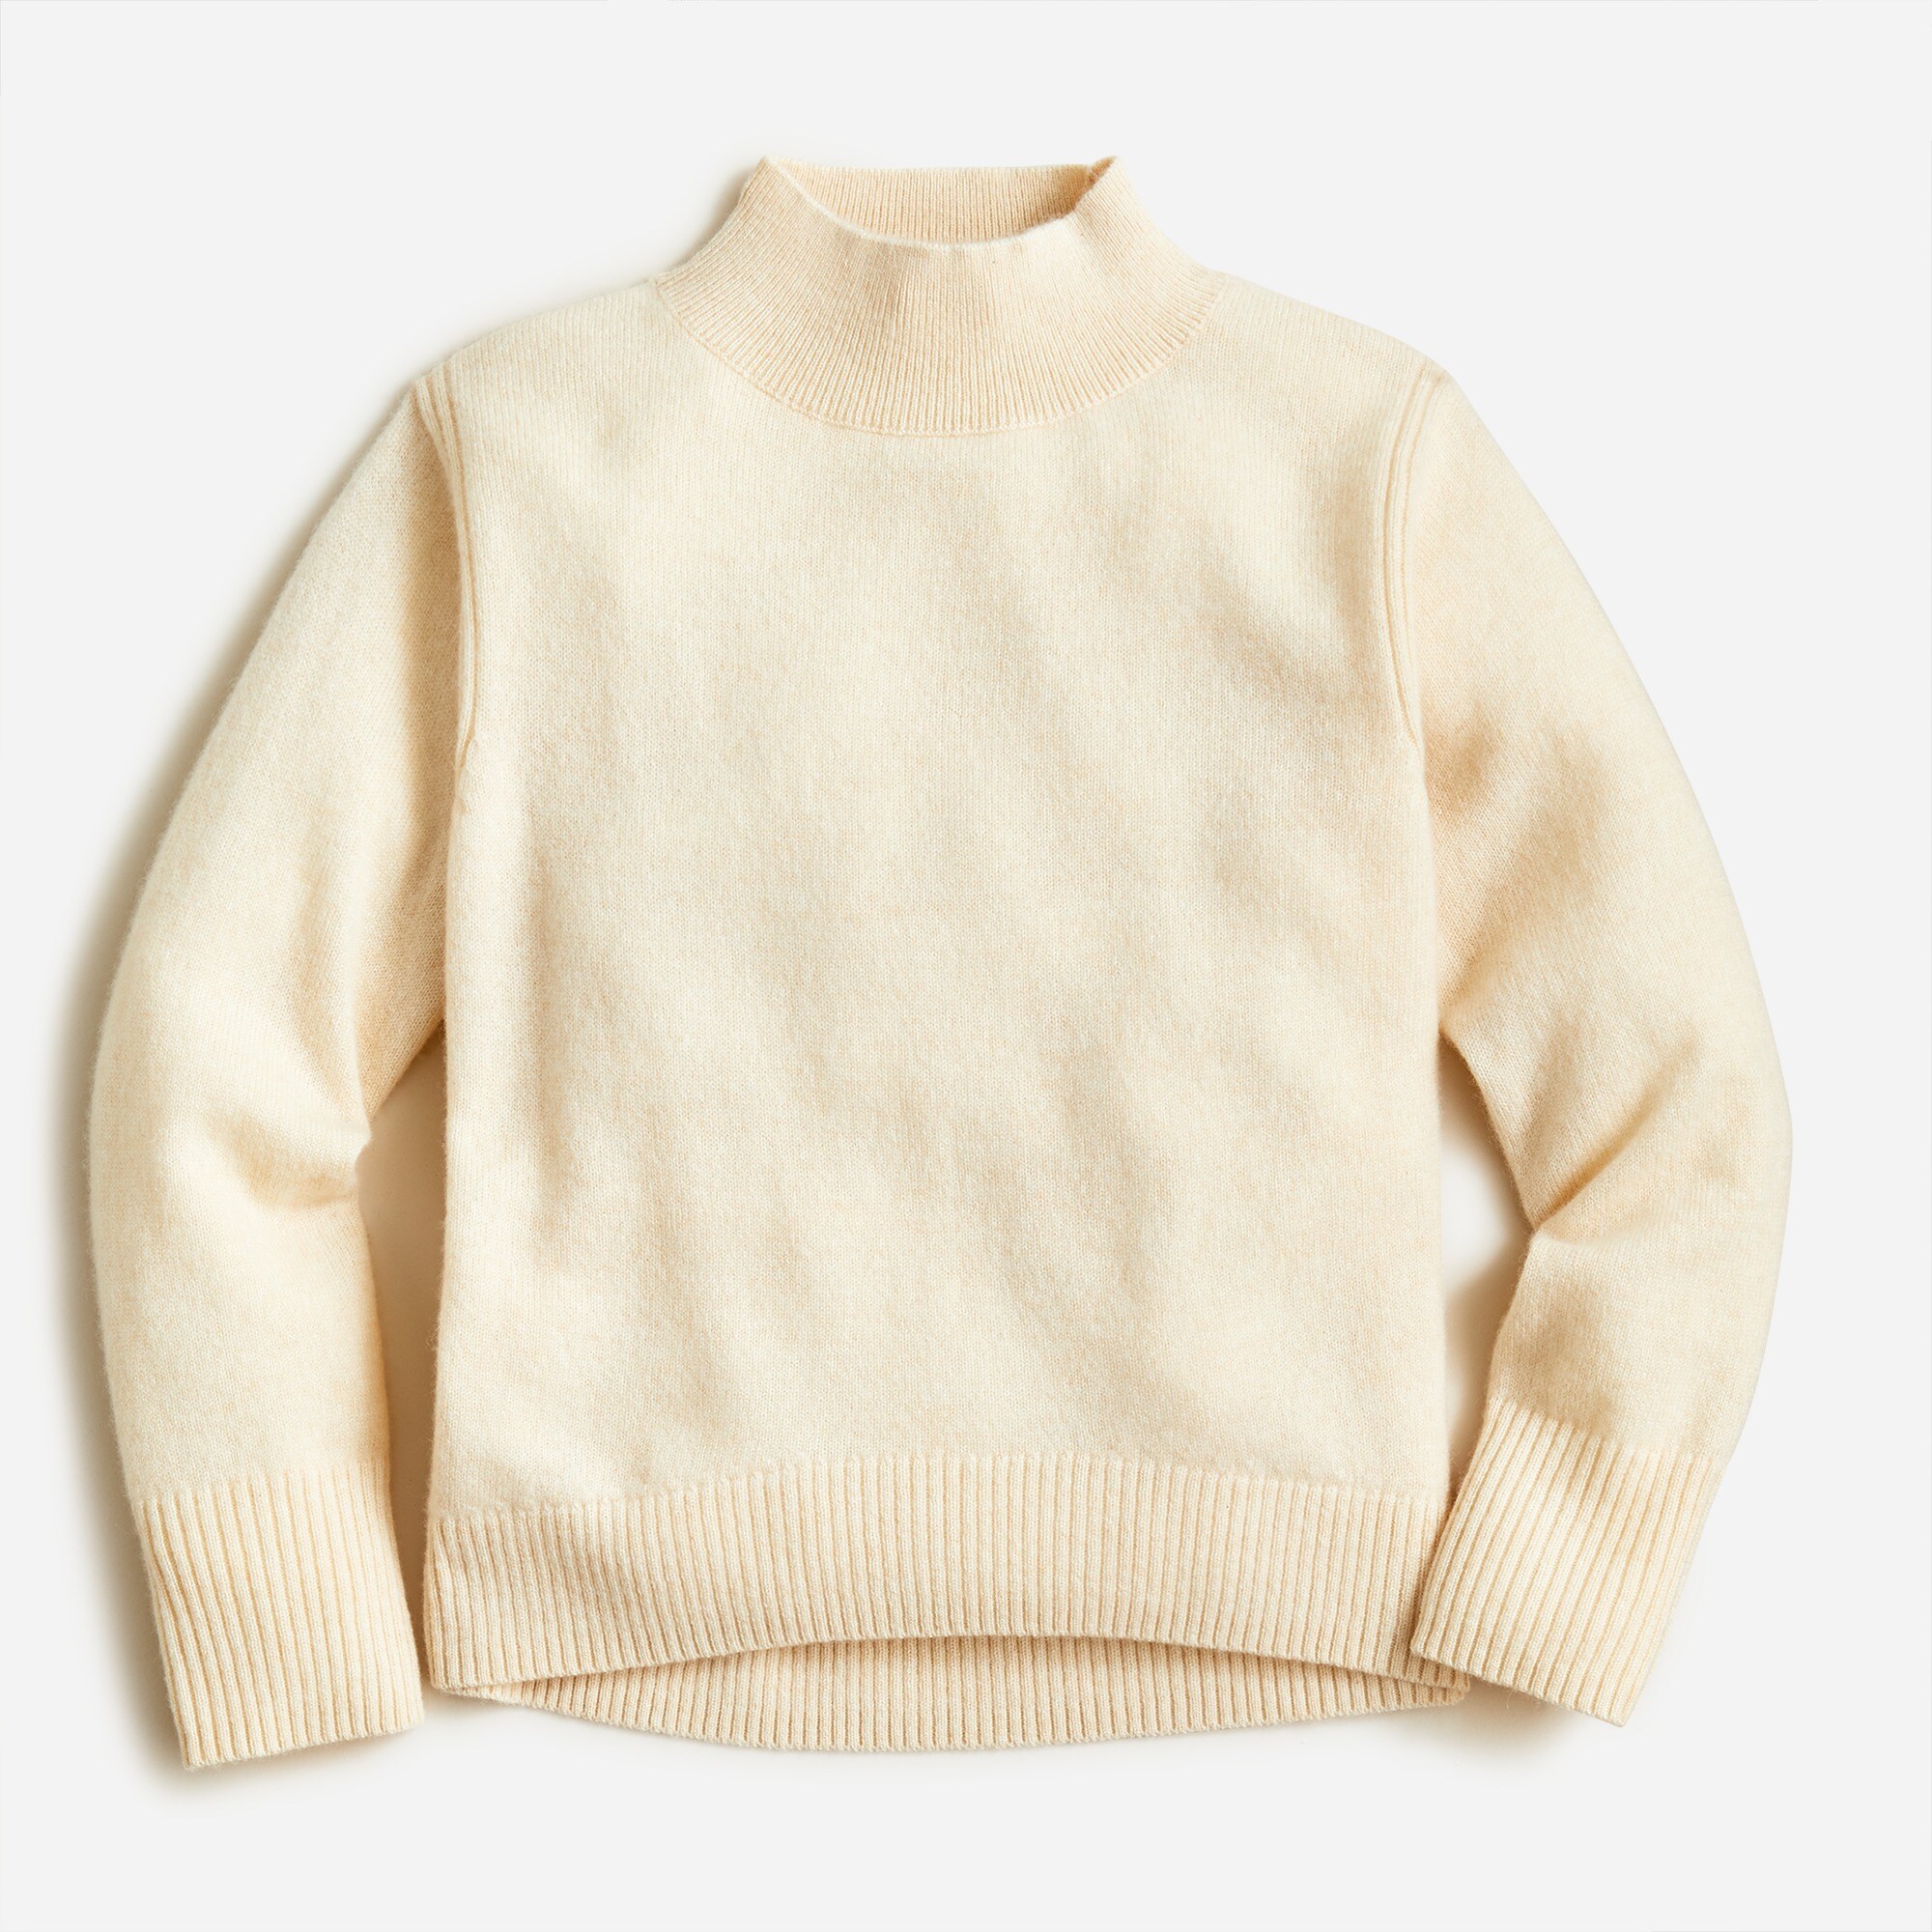 제이크루 걸즈 스웨터 J.Crew Girls cashmere mockneck sweater,HTHR NATURAL